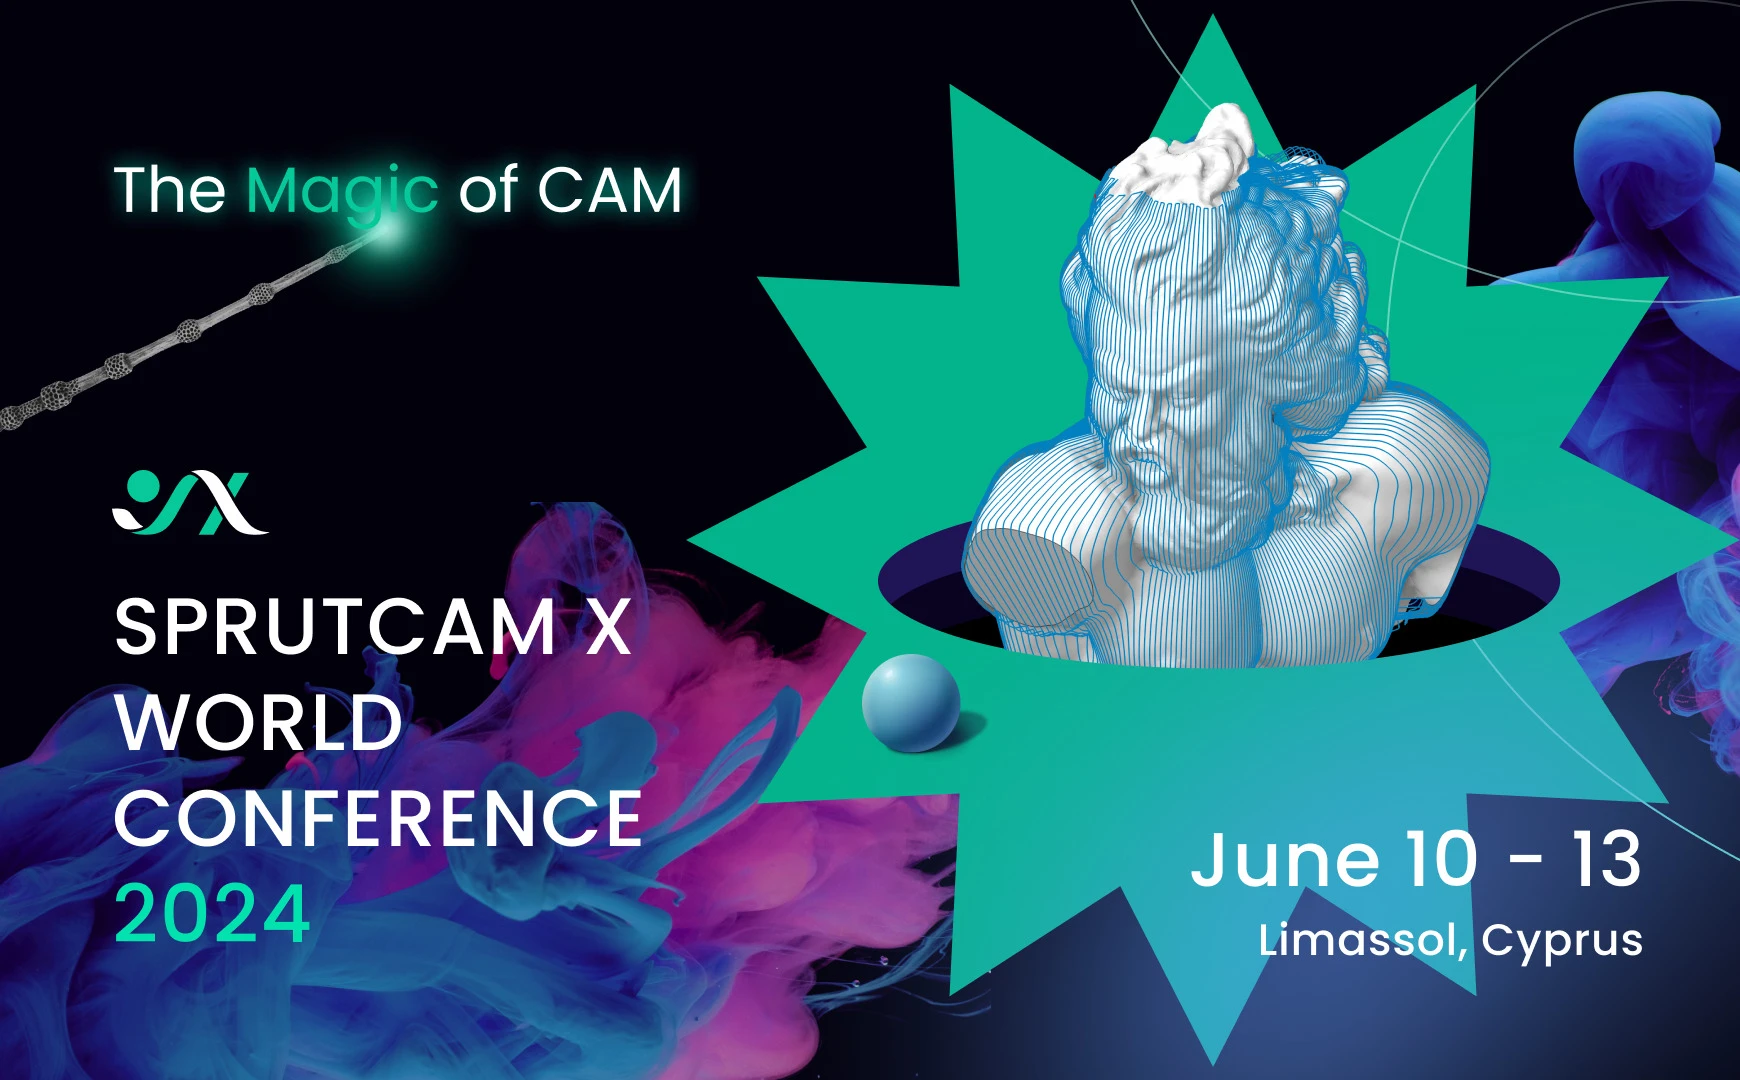 SprutCAM X World Conference 2024 (SWC 2024) | SprutCAM X